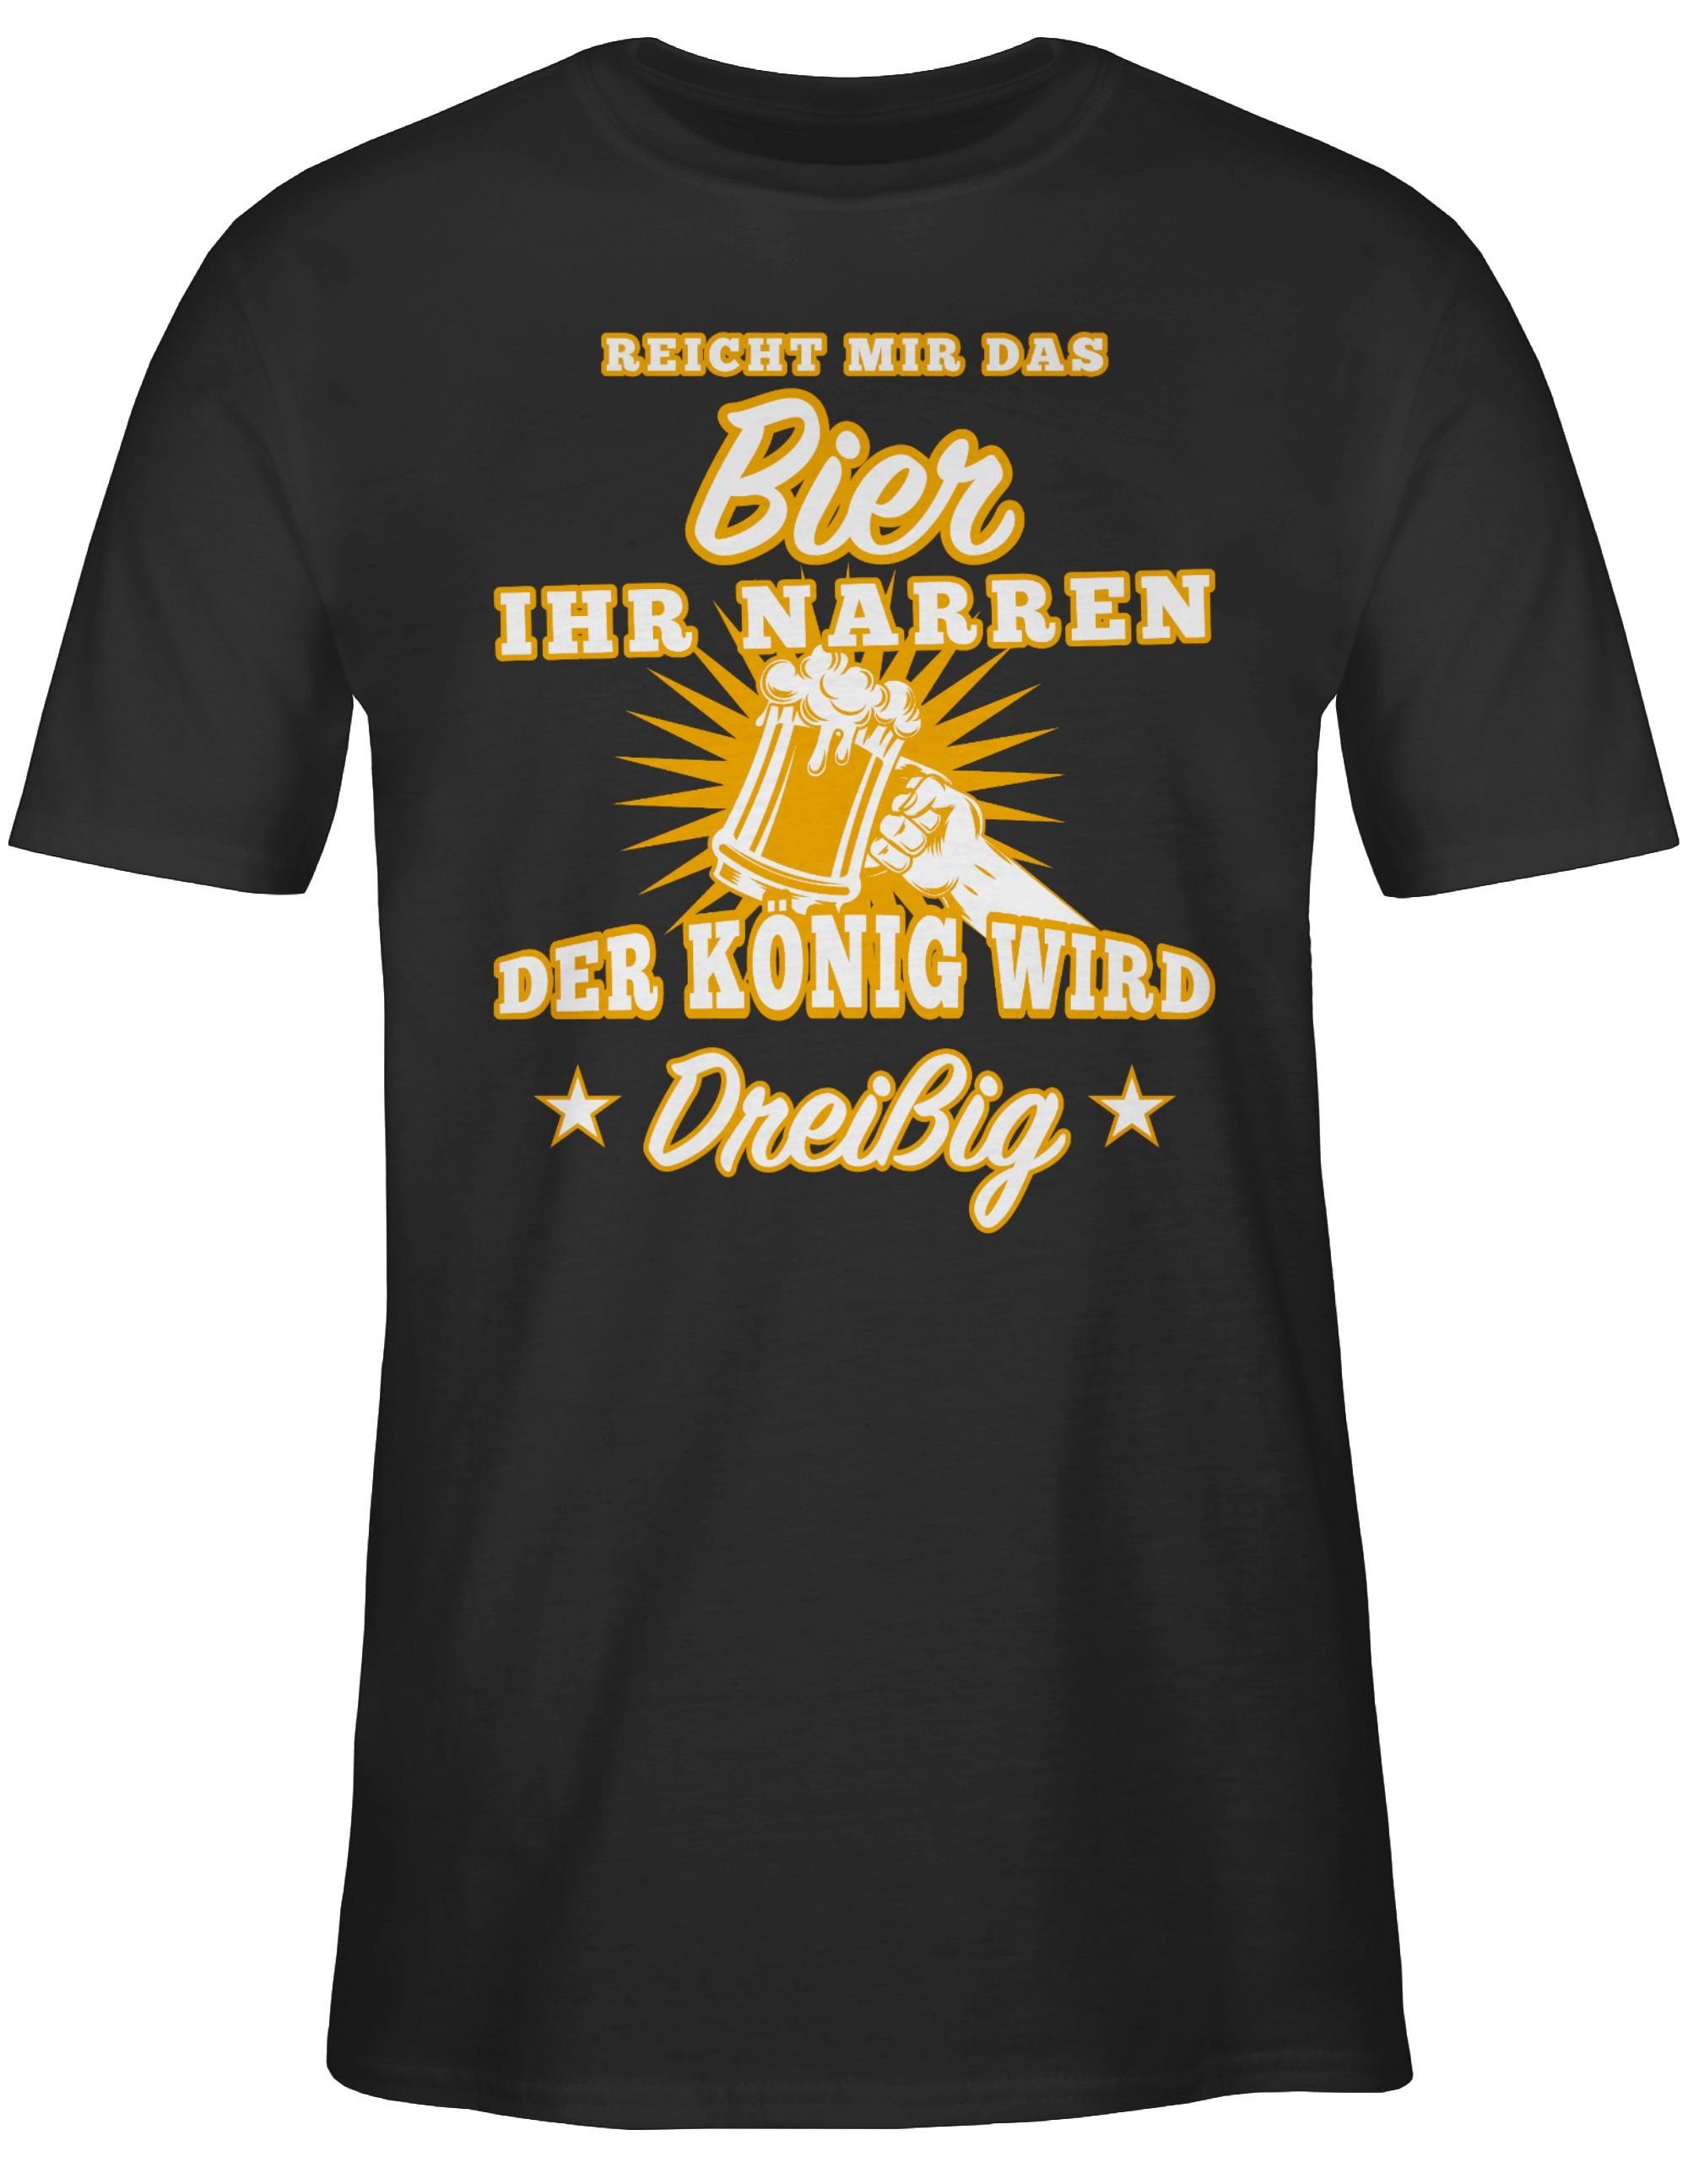 Shirtracer T-Shirt Reicht mir das 30. Schwarz 01 Dreißig ihr Geburtstag Bier Narren